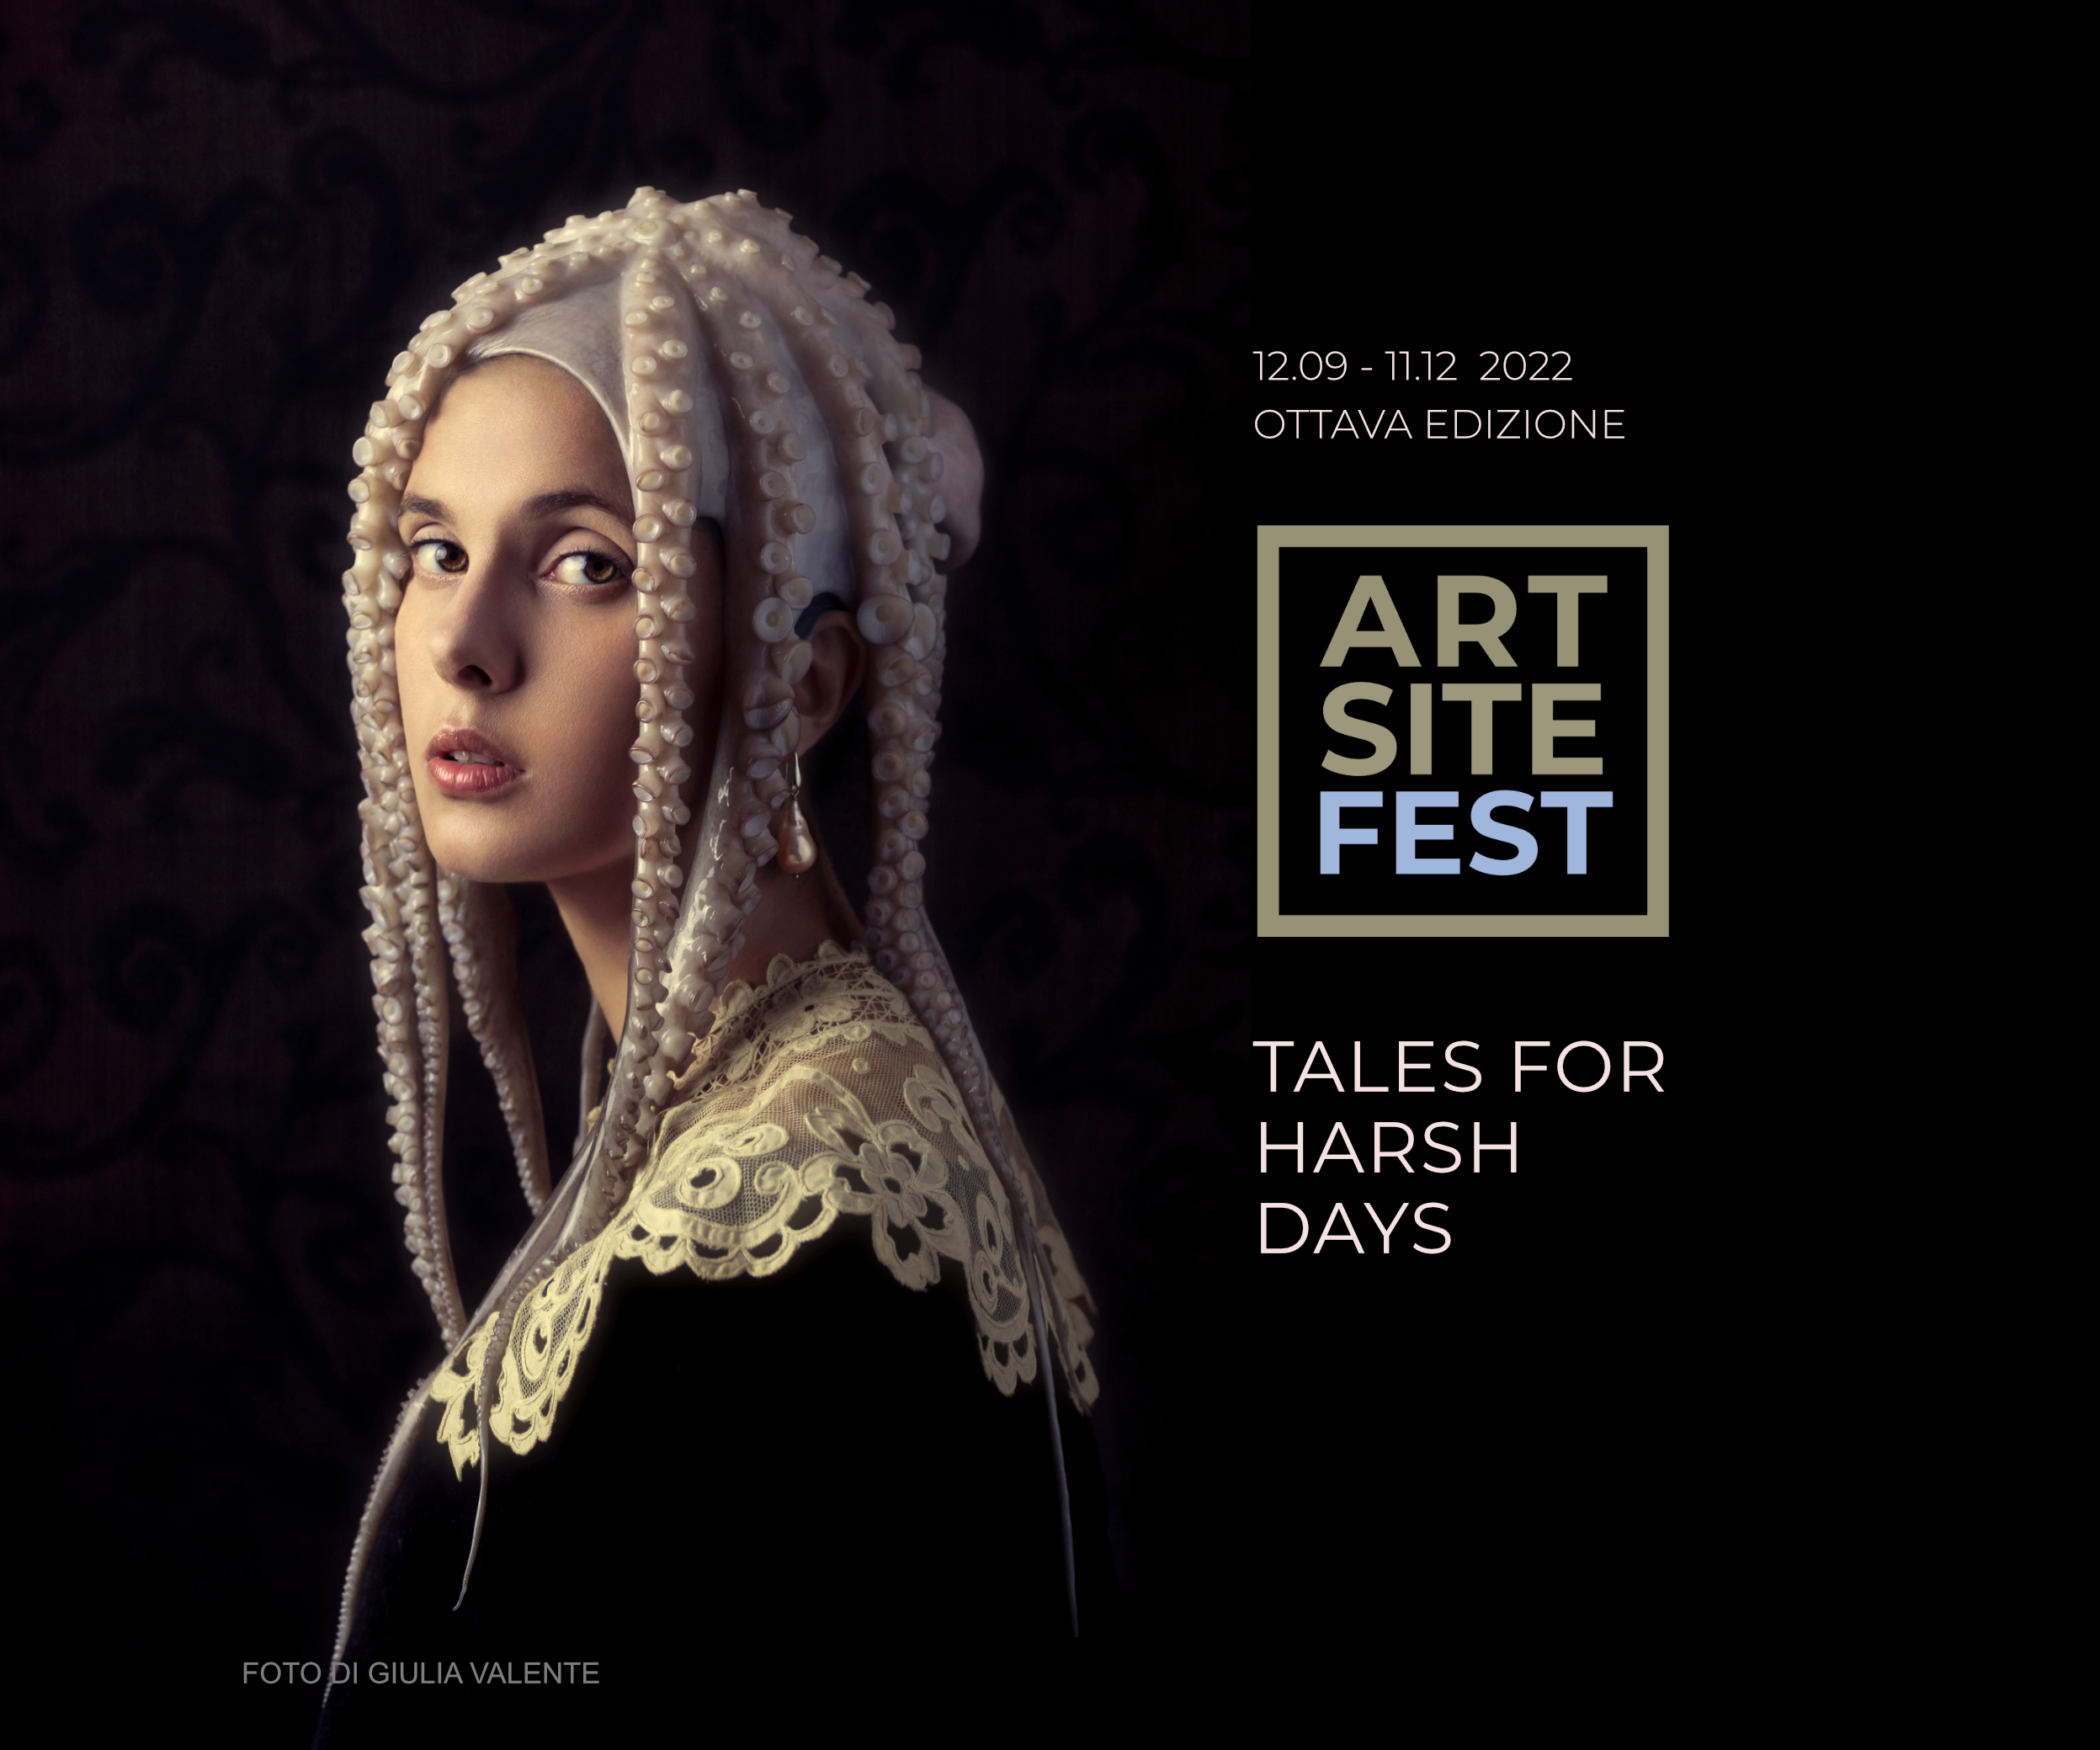 Art Site Fest | Tales for harsh days